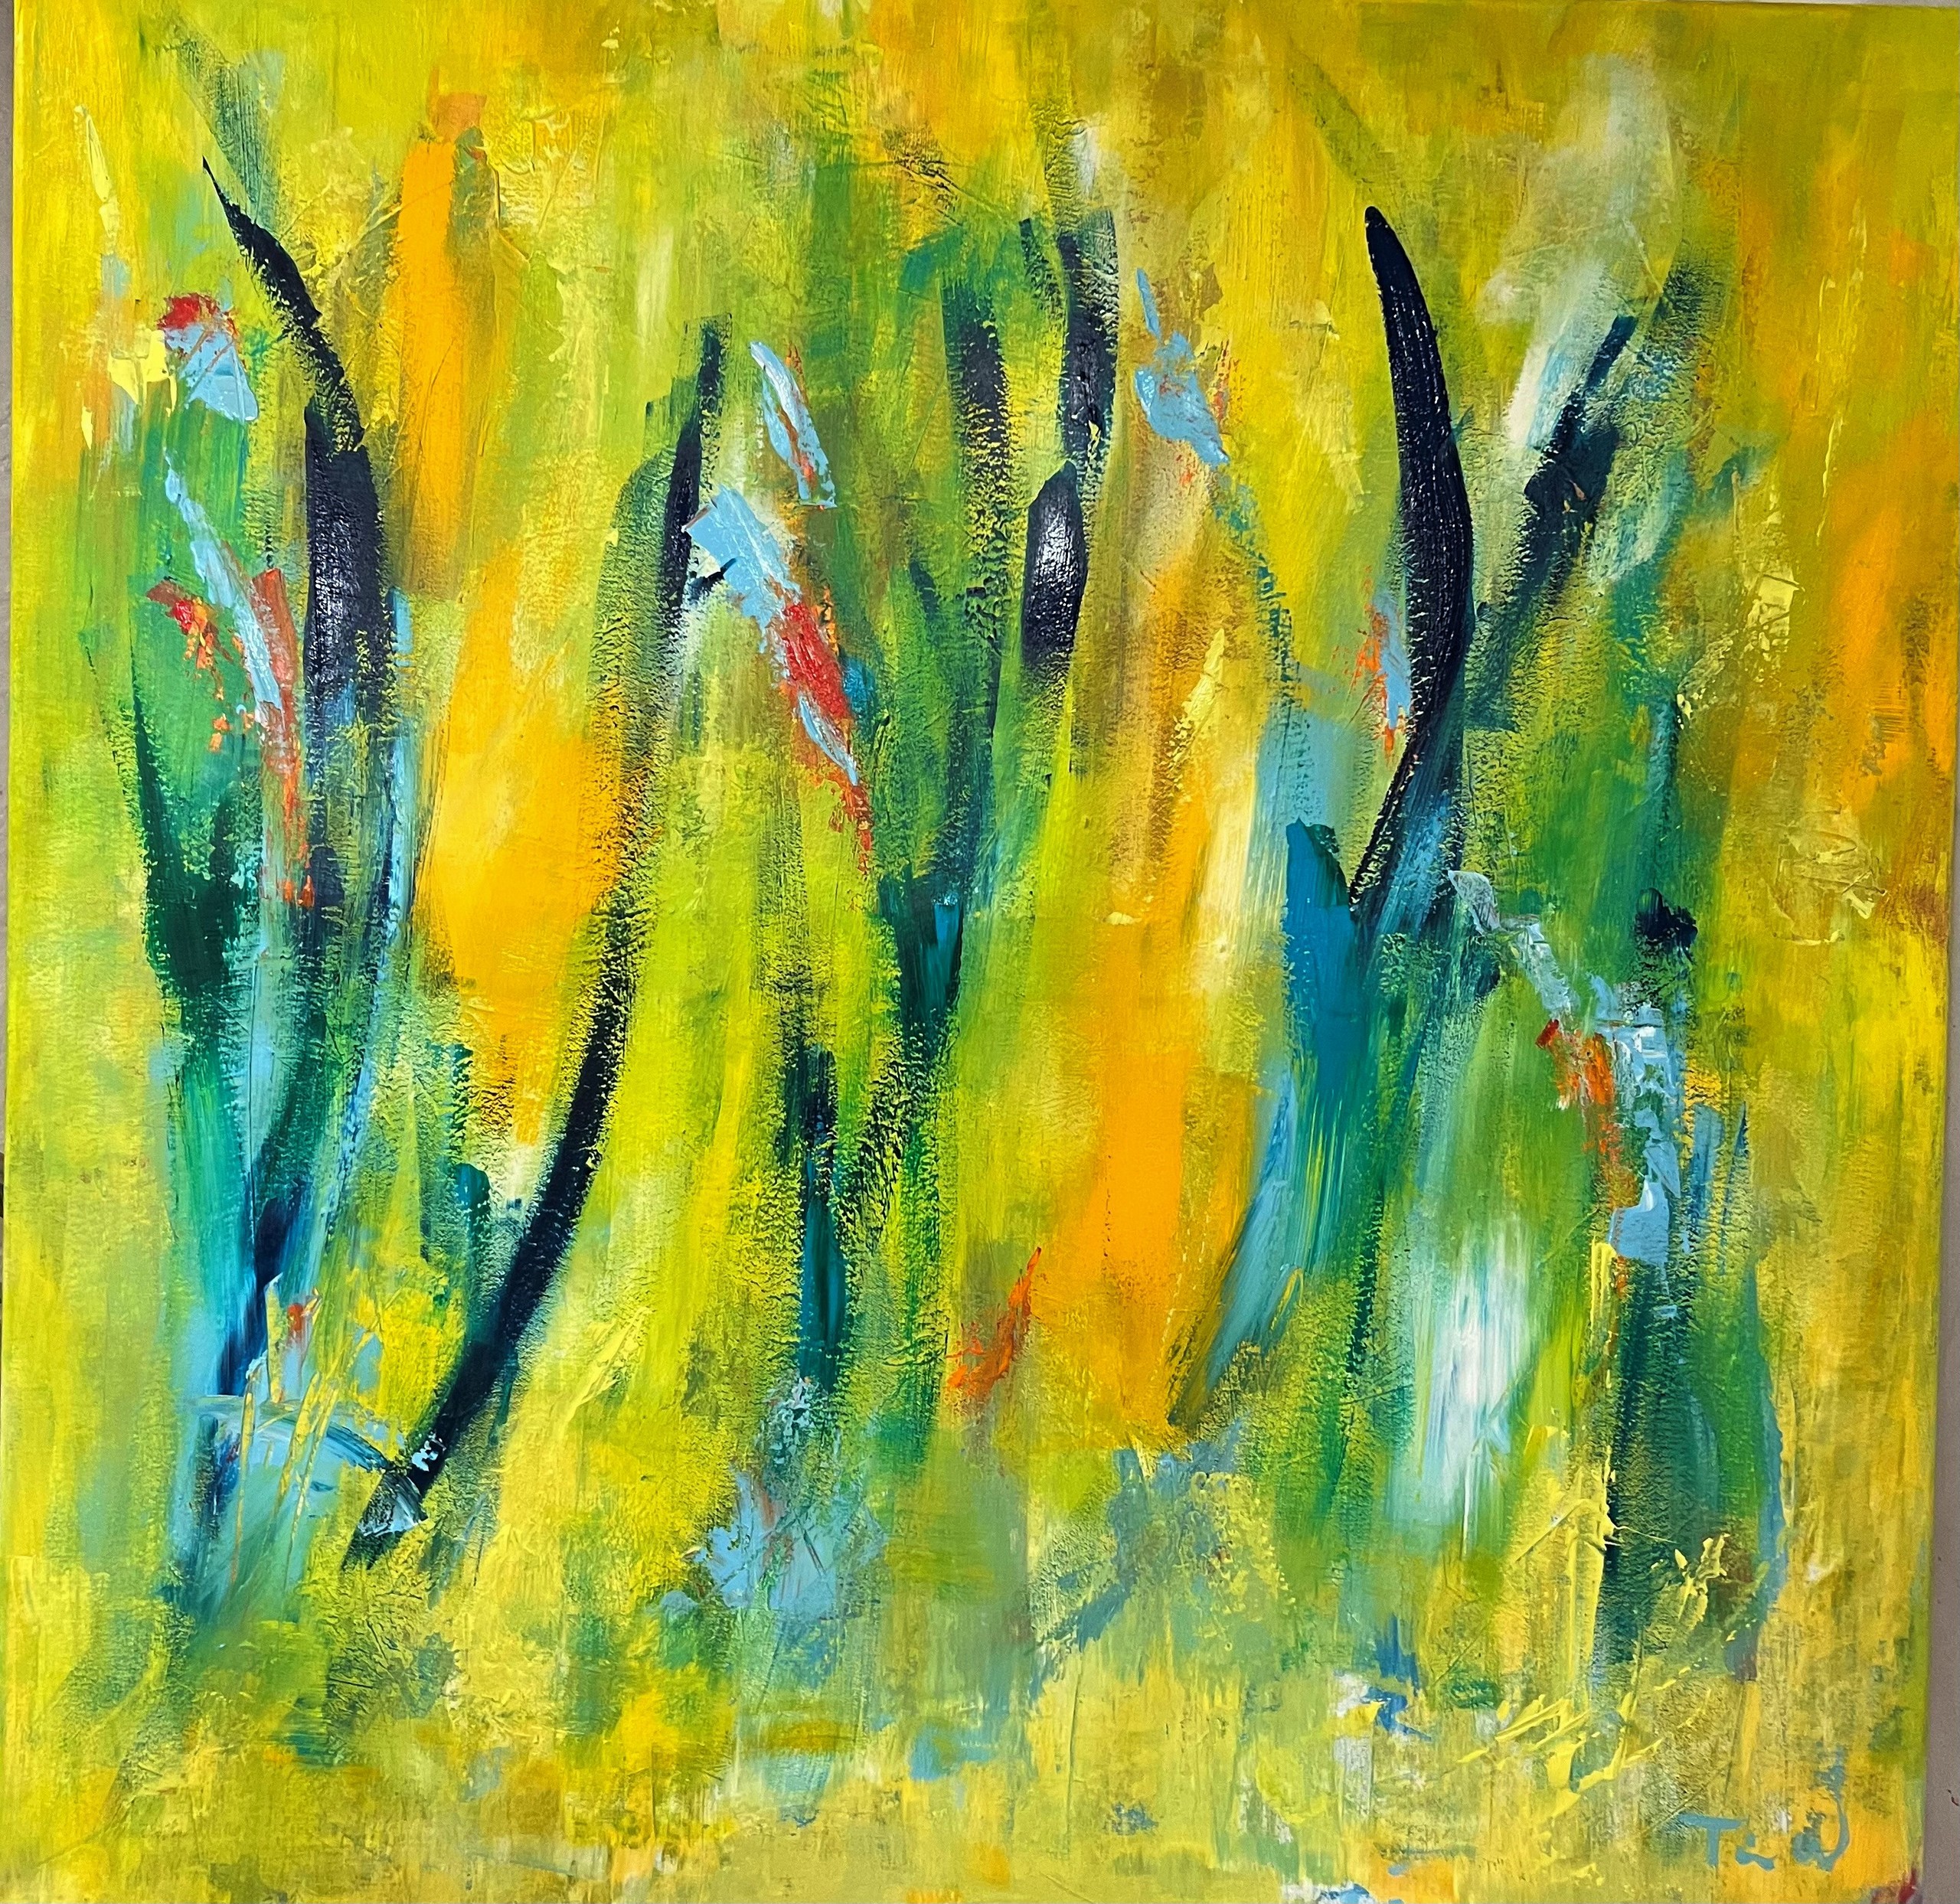 Kvadratisk abstrakt farverigt maleri, hvor nogle ser planter, blomster, fugle og eller dyr.